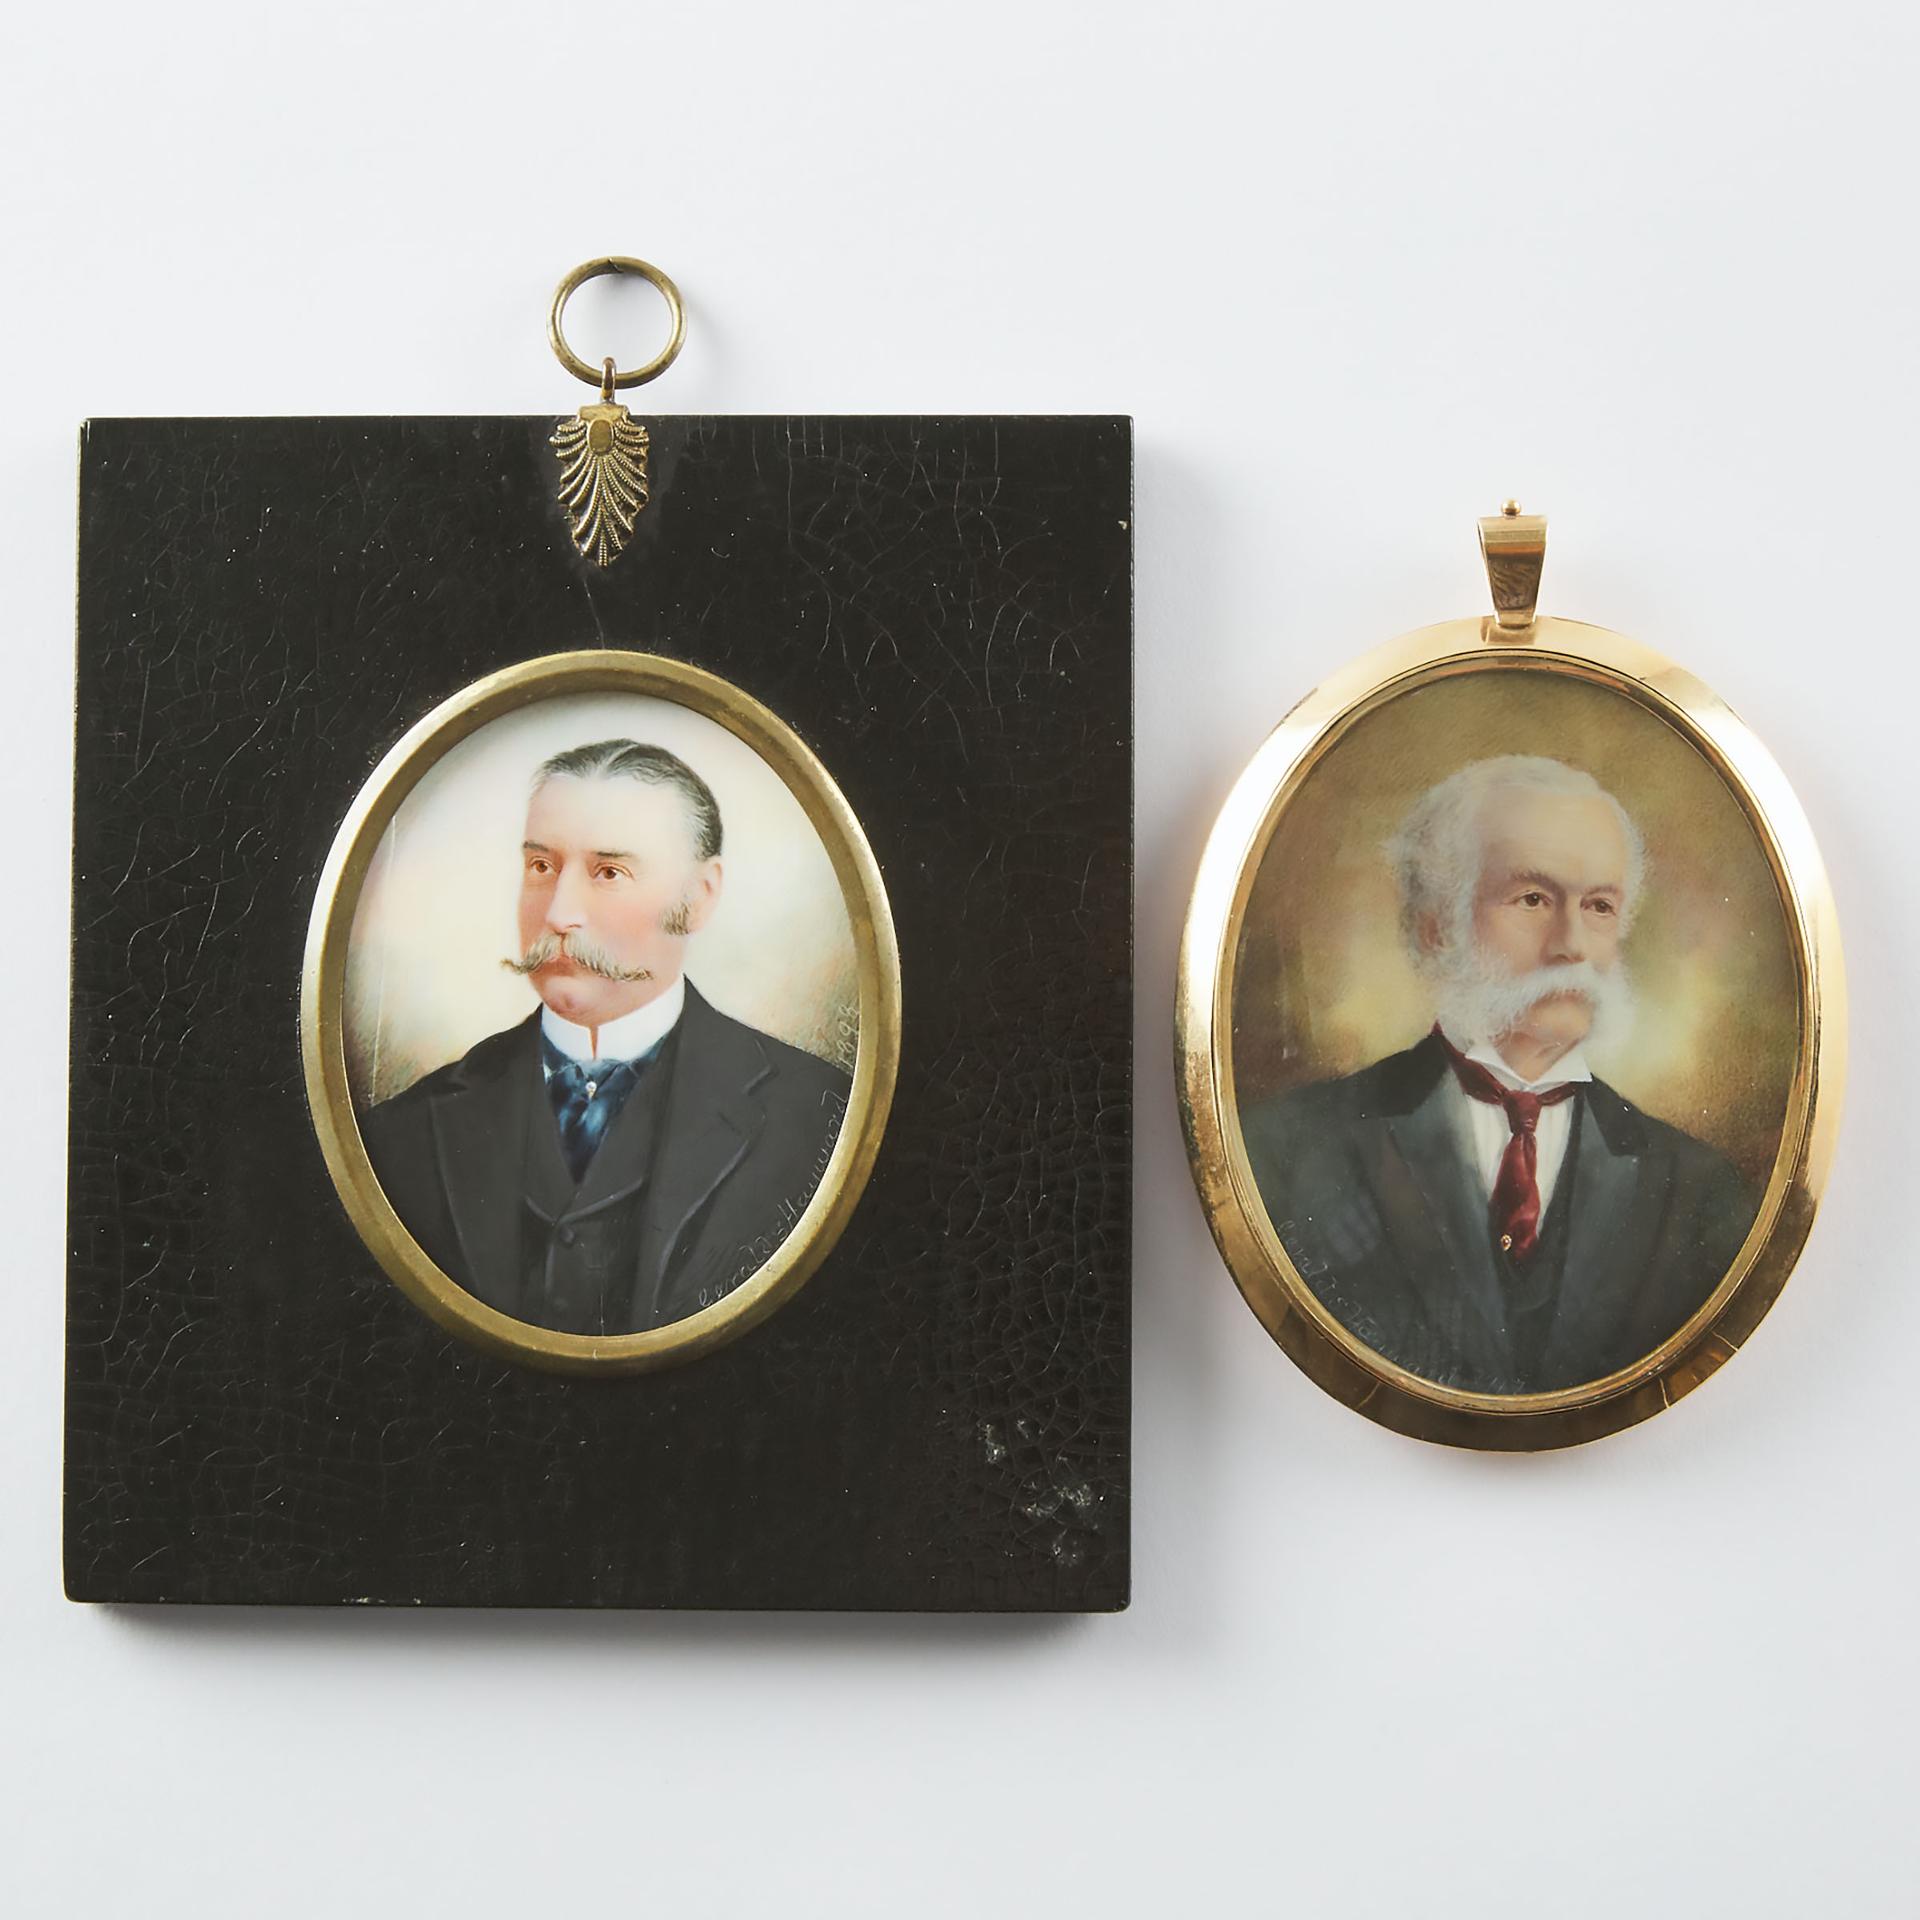 Gerald Sinclair Hayward - Two Portrait Miniatures Of Gentlemen